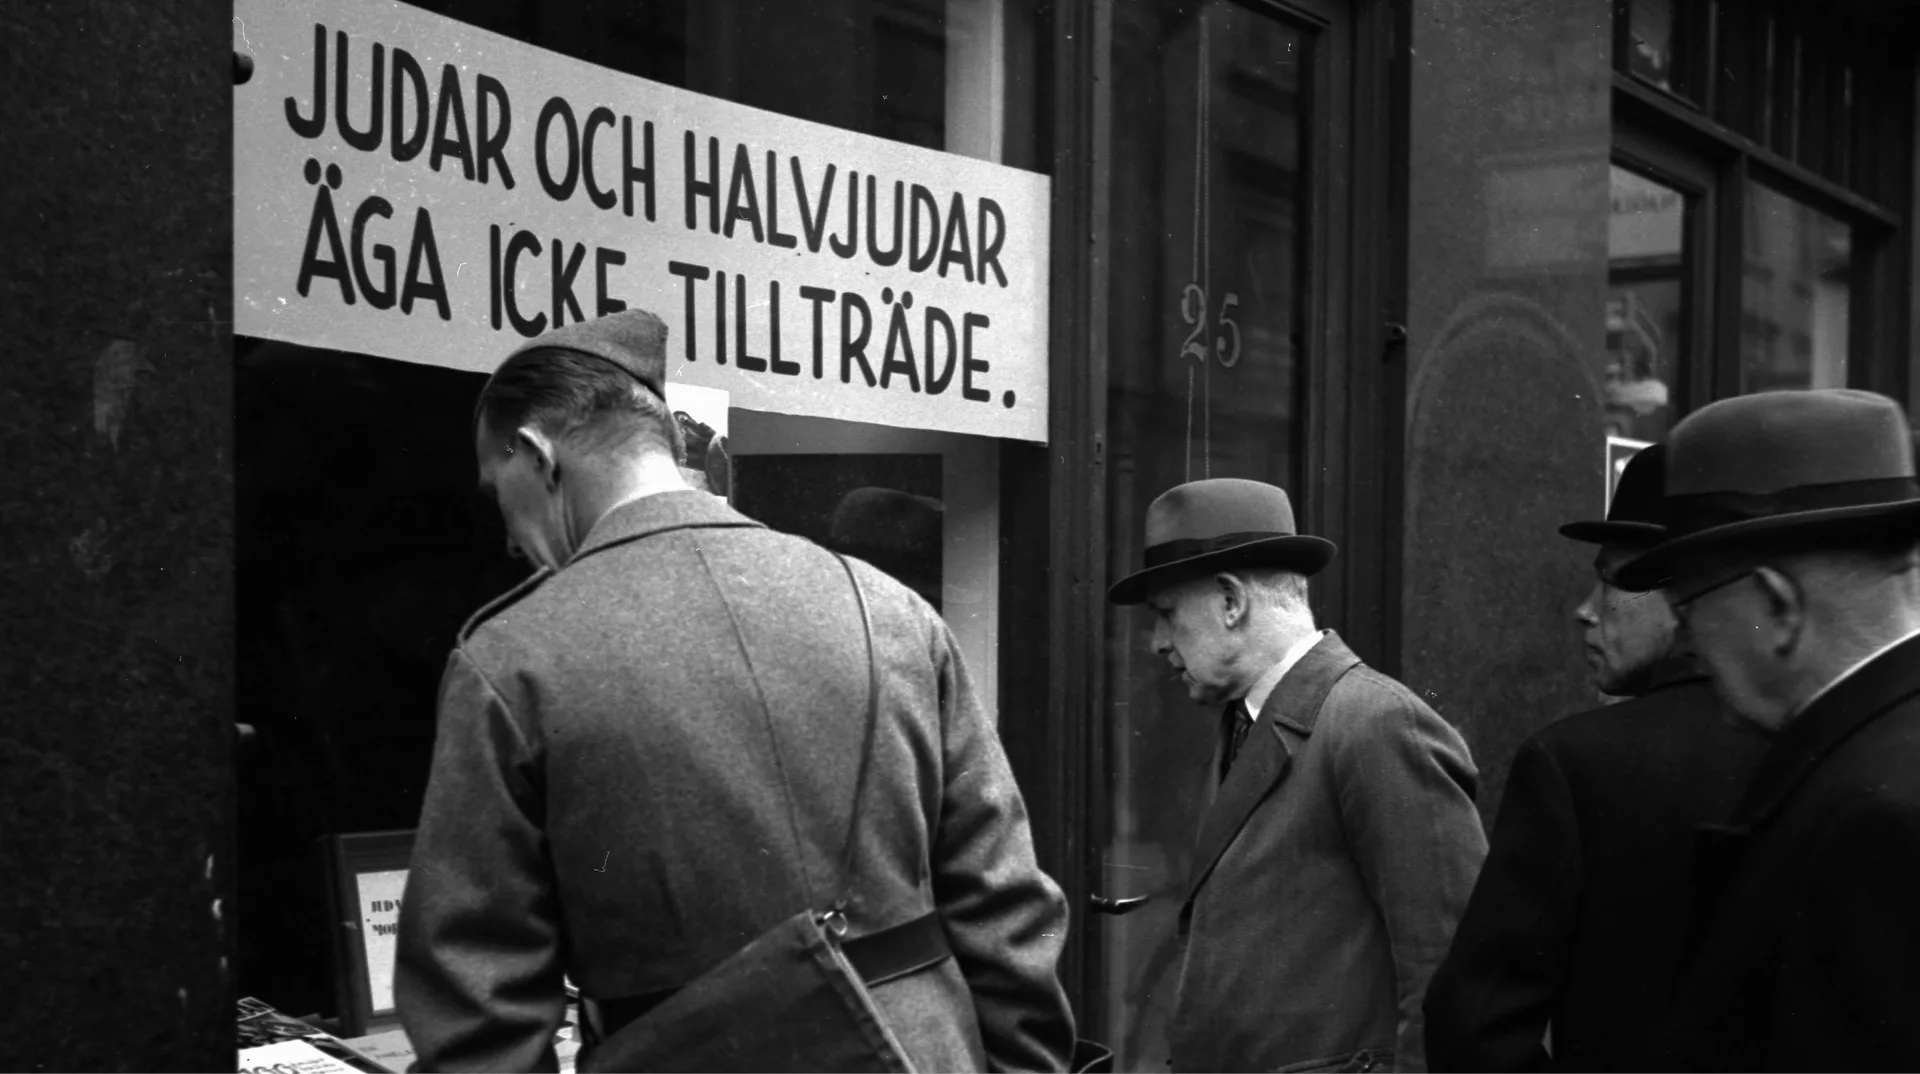 Rasism i Stockholm, oktober 1941. Antisemitisk skyltning i bokhandel. På skylten står det: "Judar och halvjudar äga icke tillträde."